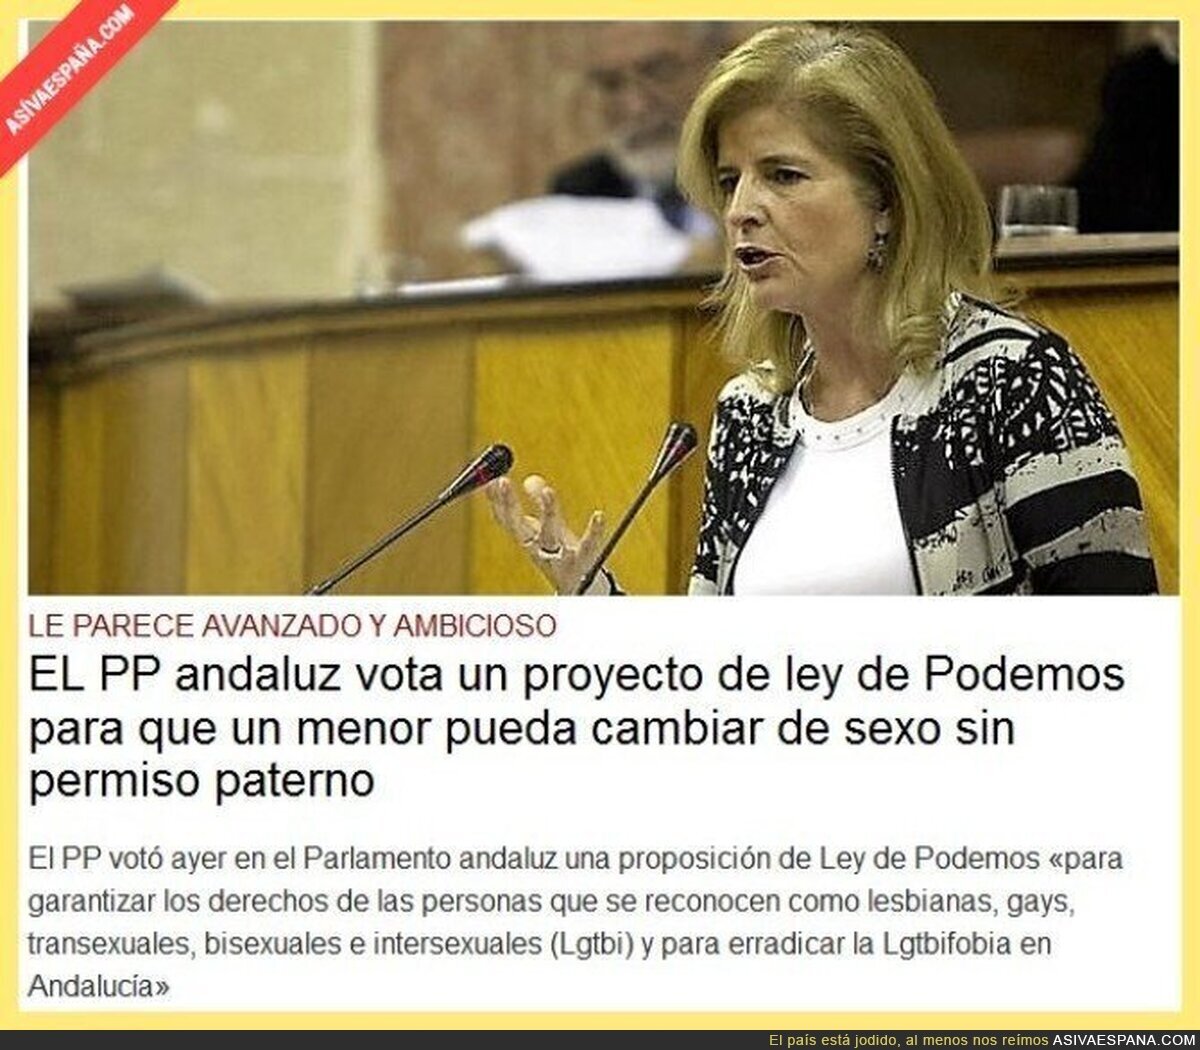 EL PP andaluz vota un proyecto de ley para que un menor pueda cambiar de sexo sin permiso